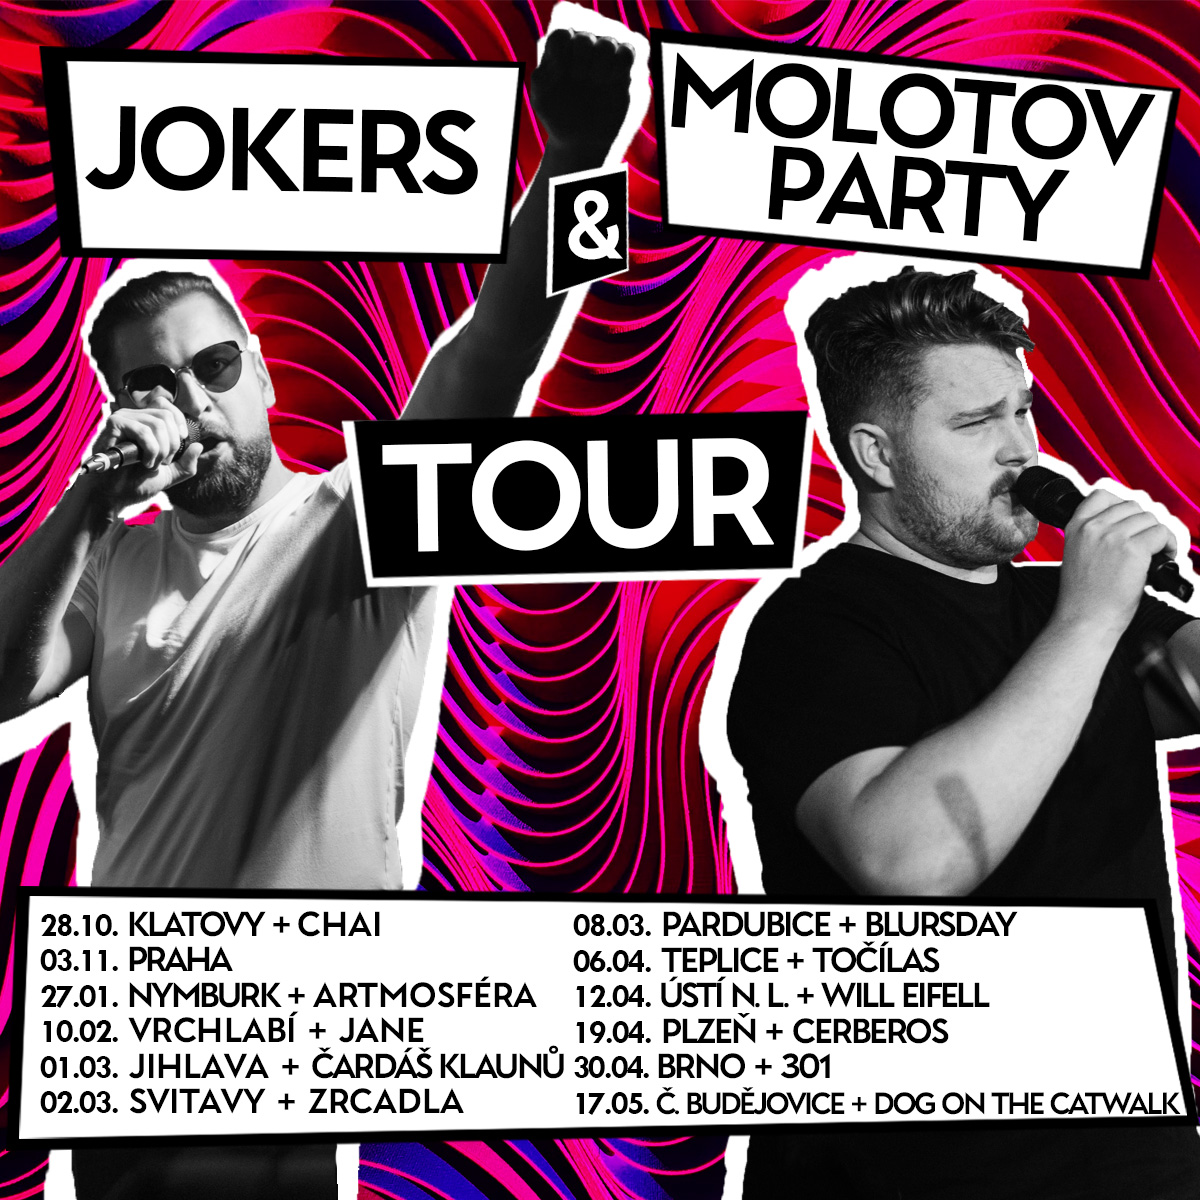 Jokers & Molotov Party Tour